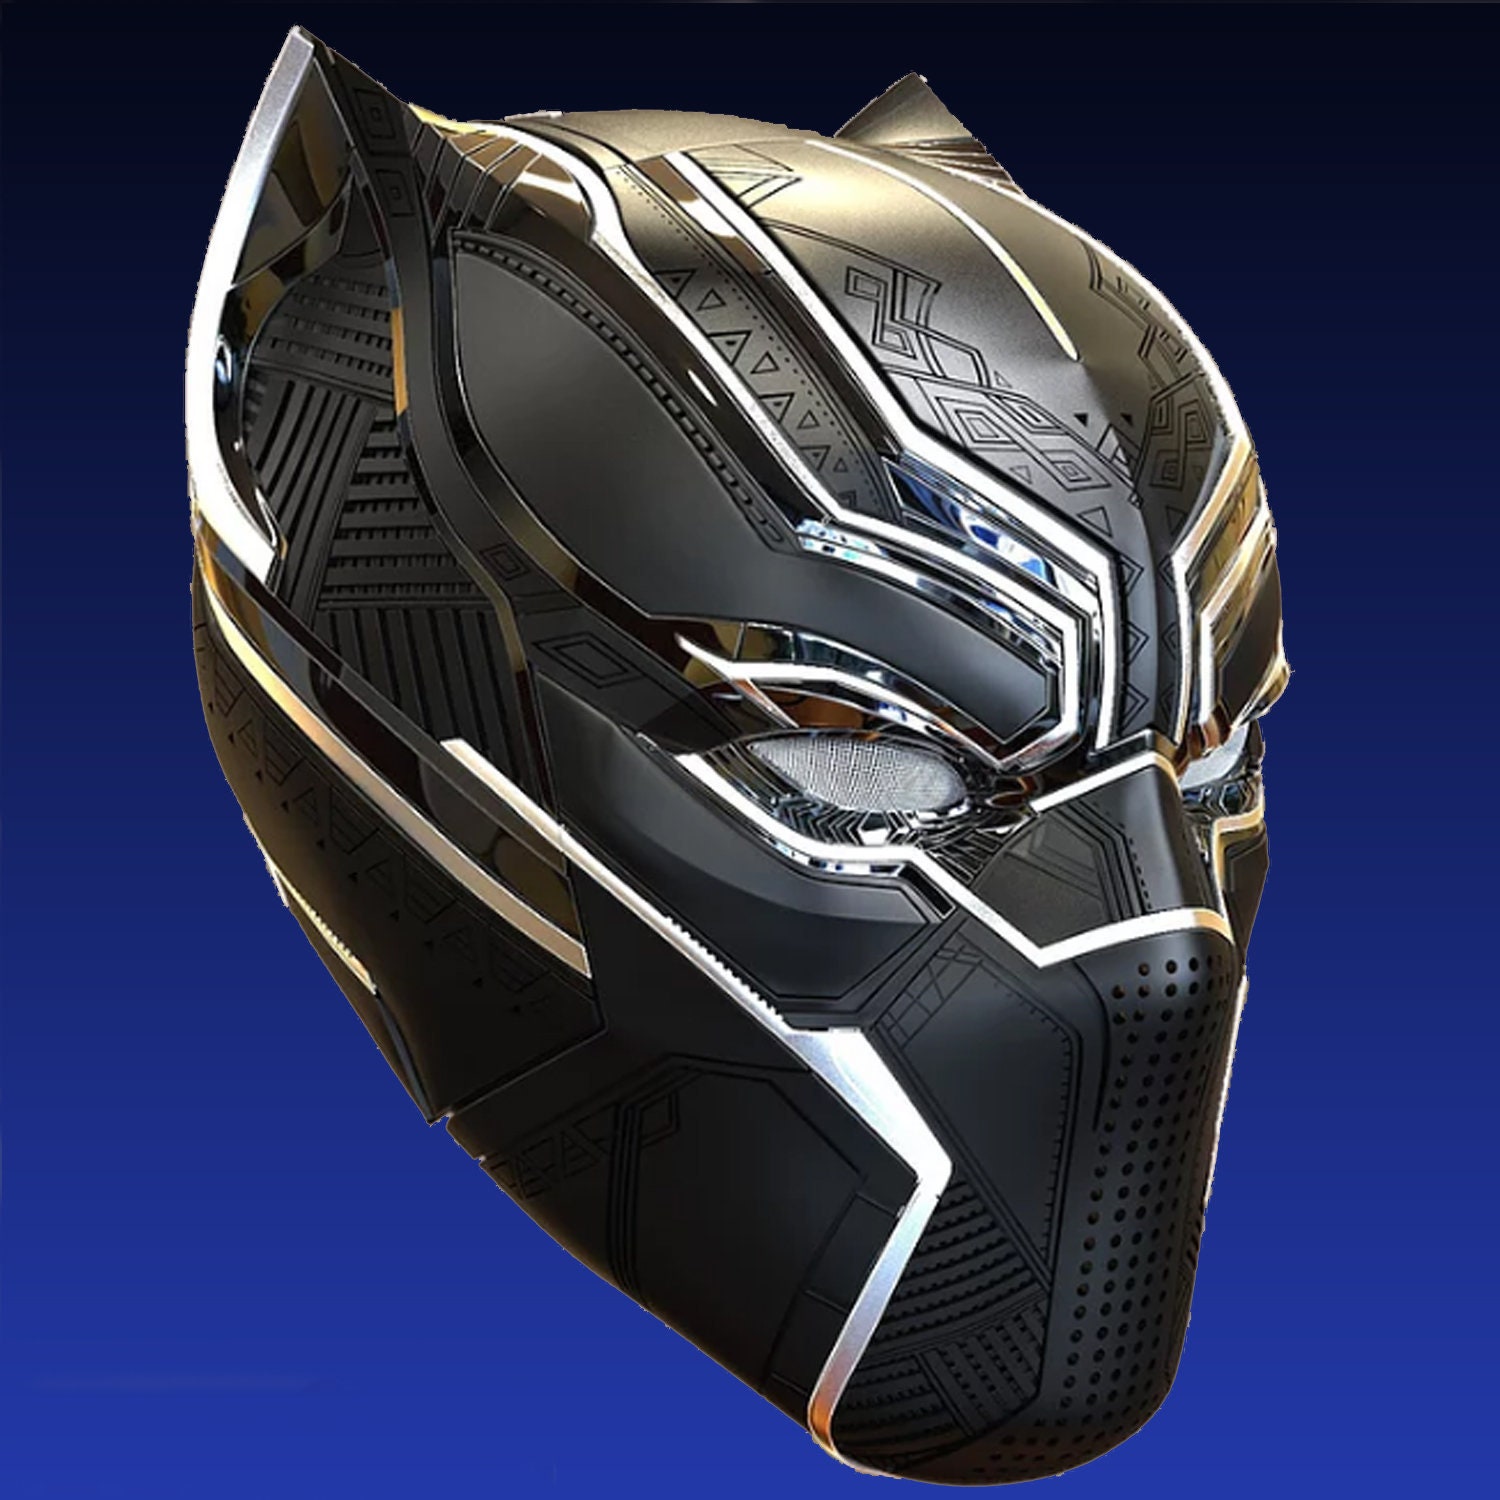 Black Panther 3D printing helmet cosplay | Etsy